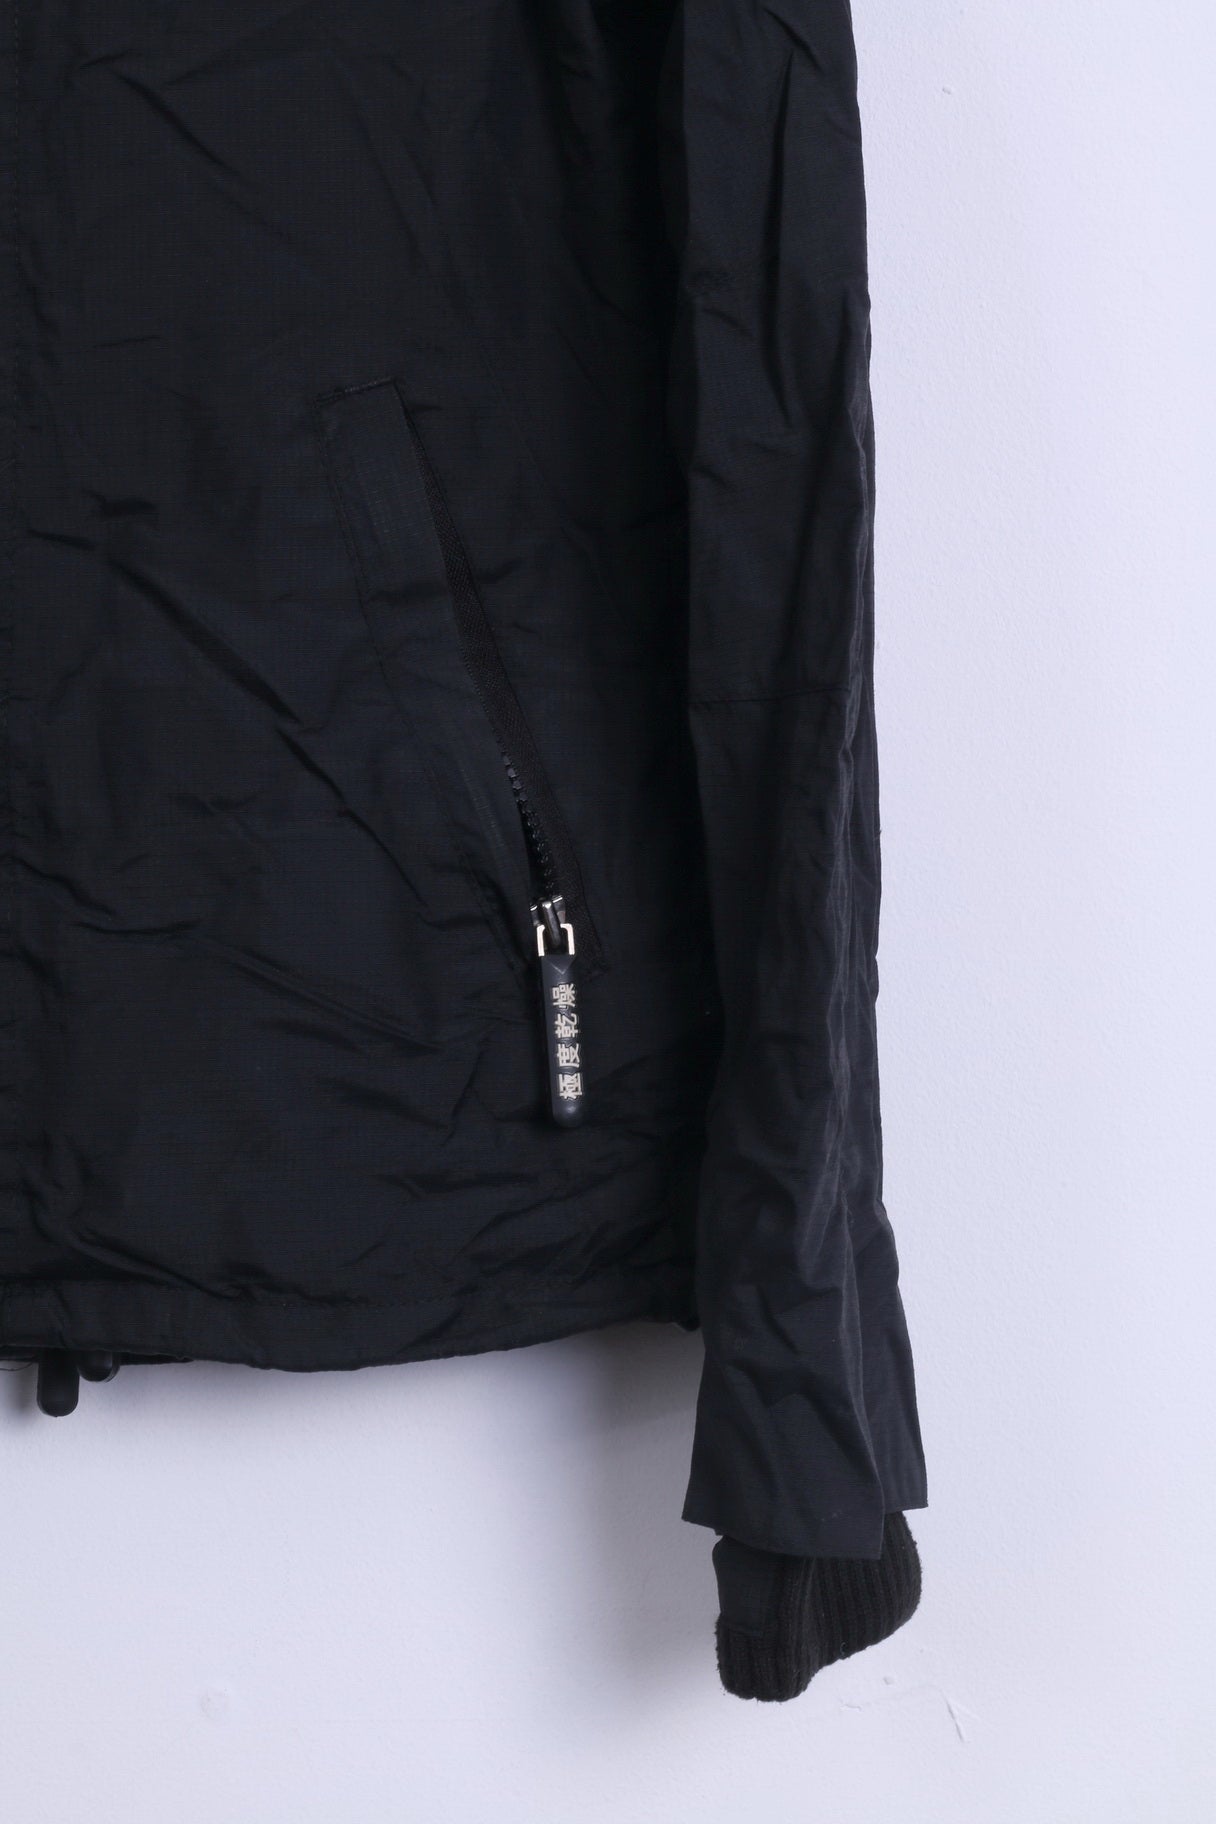 Giacca da donna M Superdry in nylon nero leggero con 3 cerniere Giappone